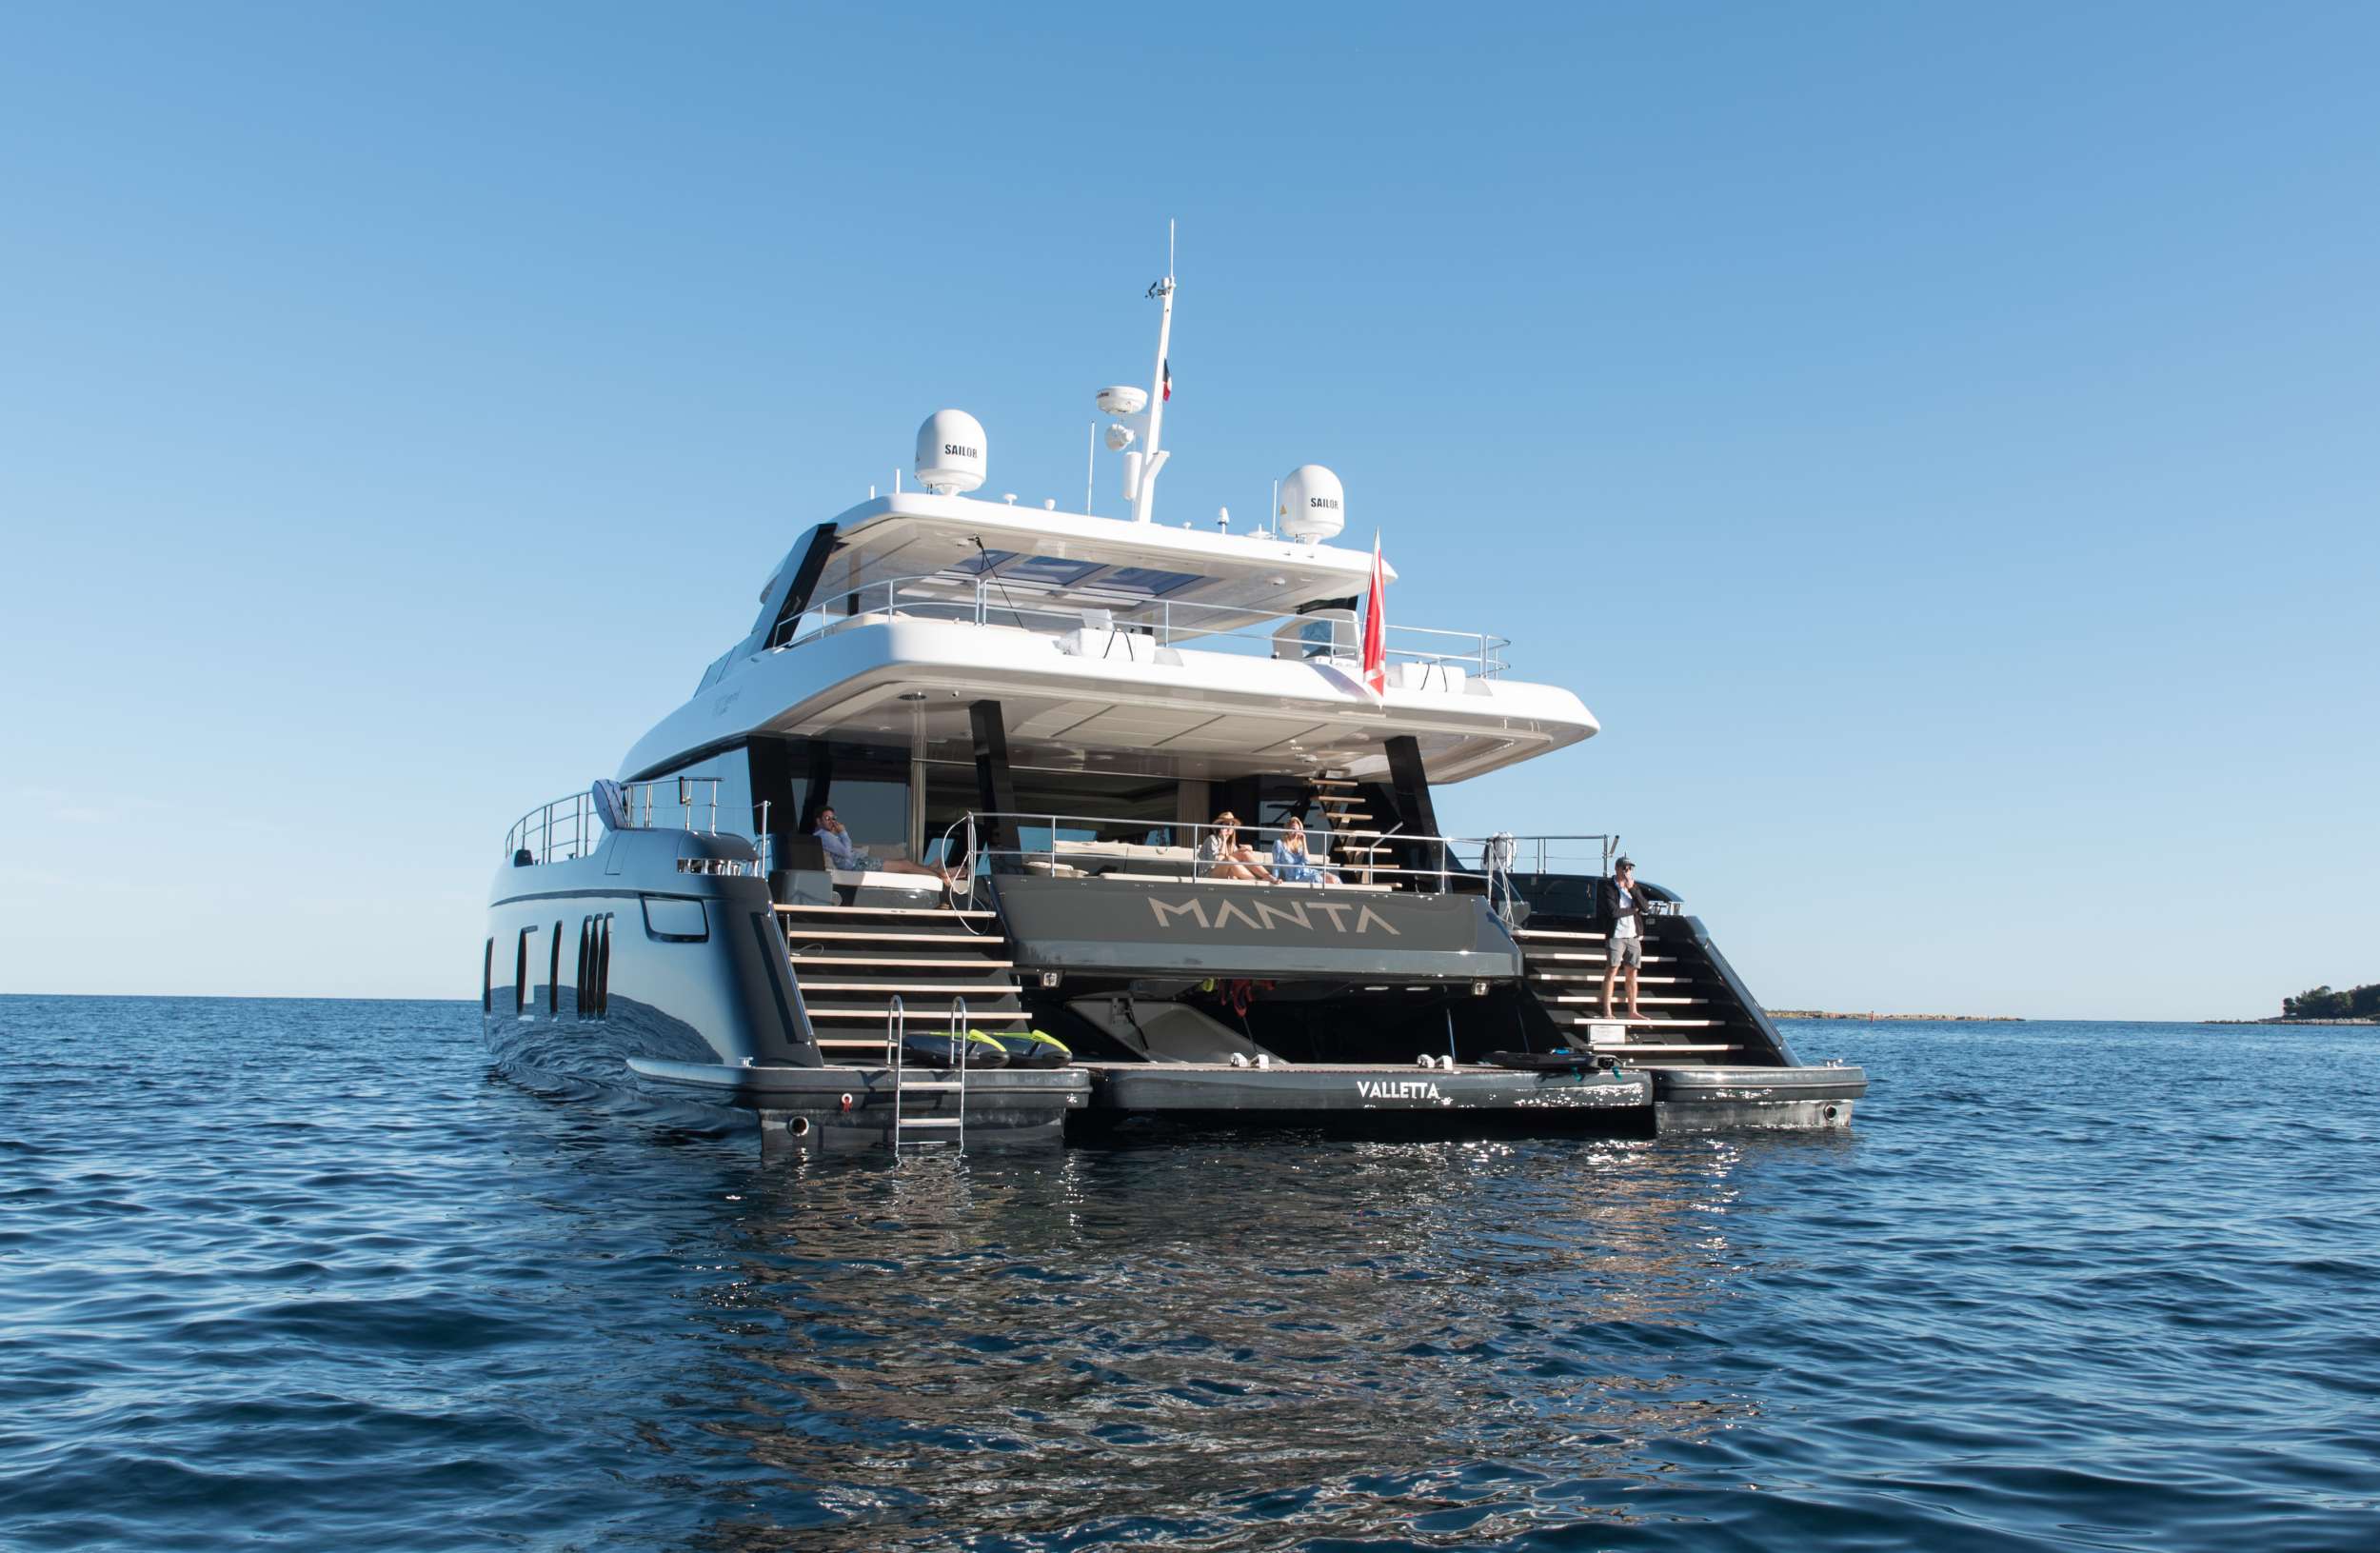 MANTA - Yacht Charter Denia & Boat hire in Riviera, Cors, Sard, Italy, Spain, Turkey, Croatia, Greece 1